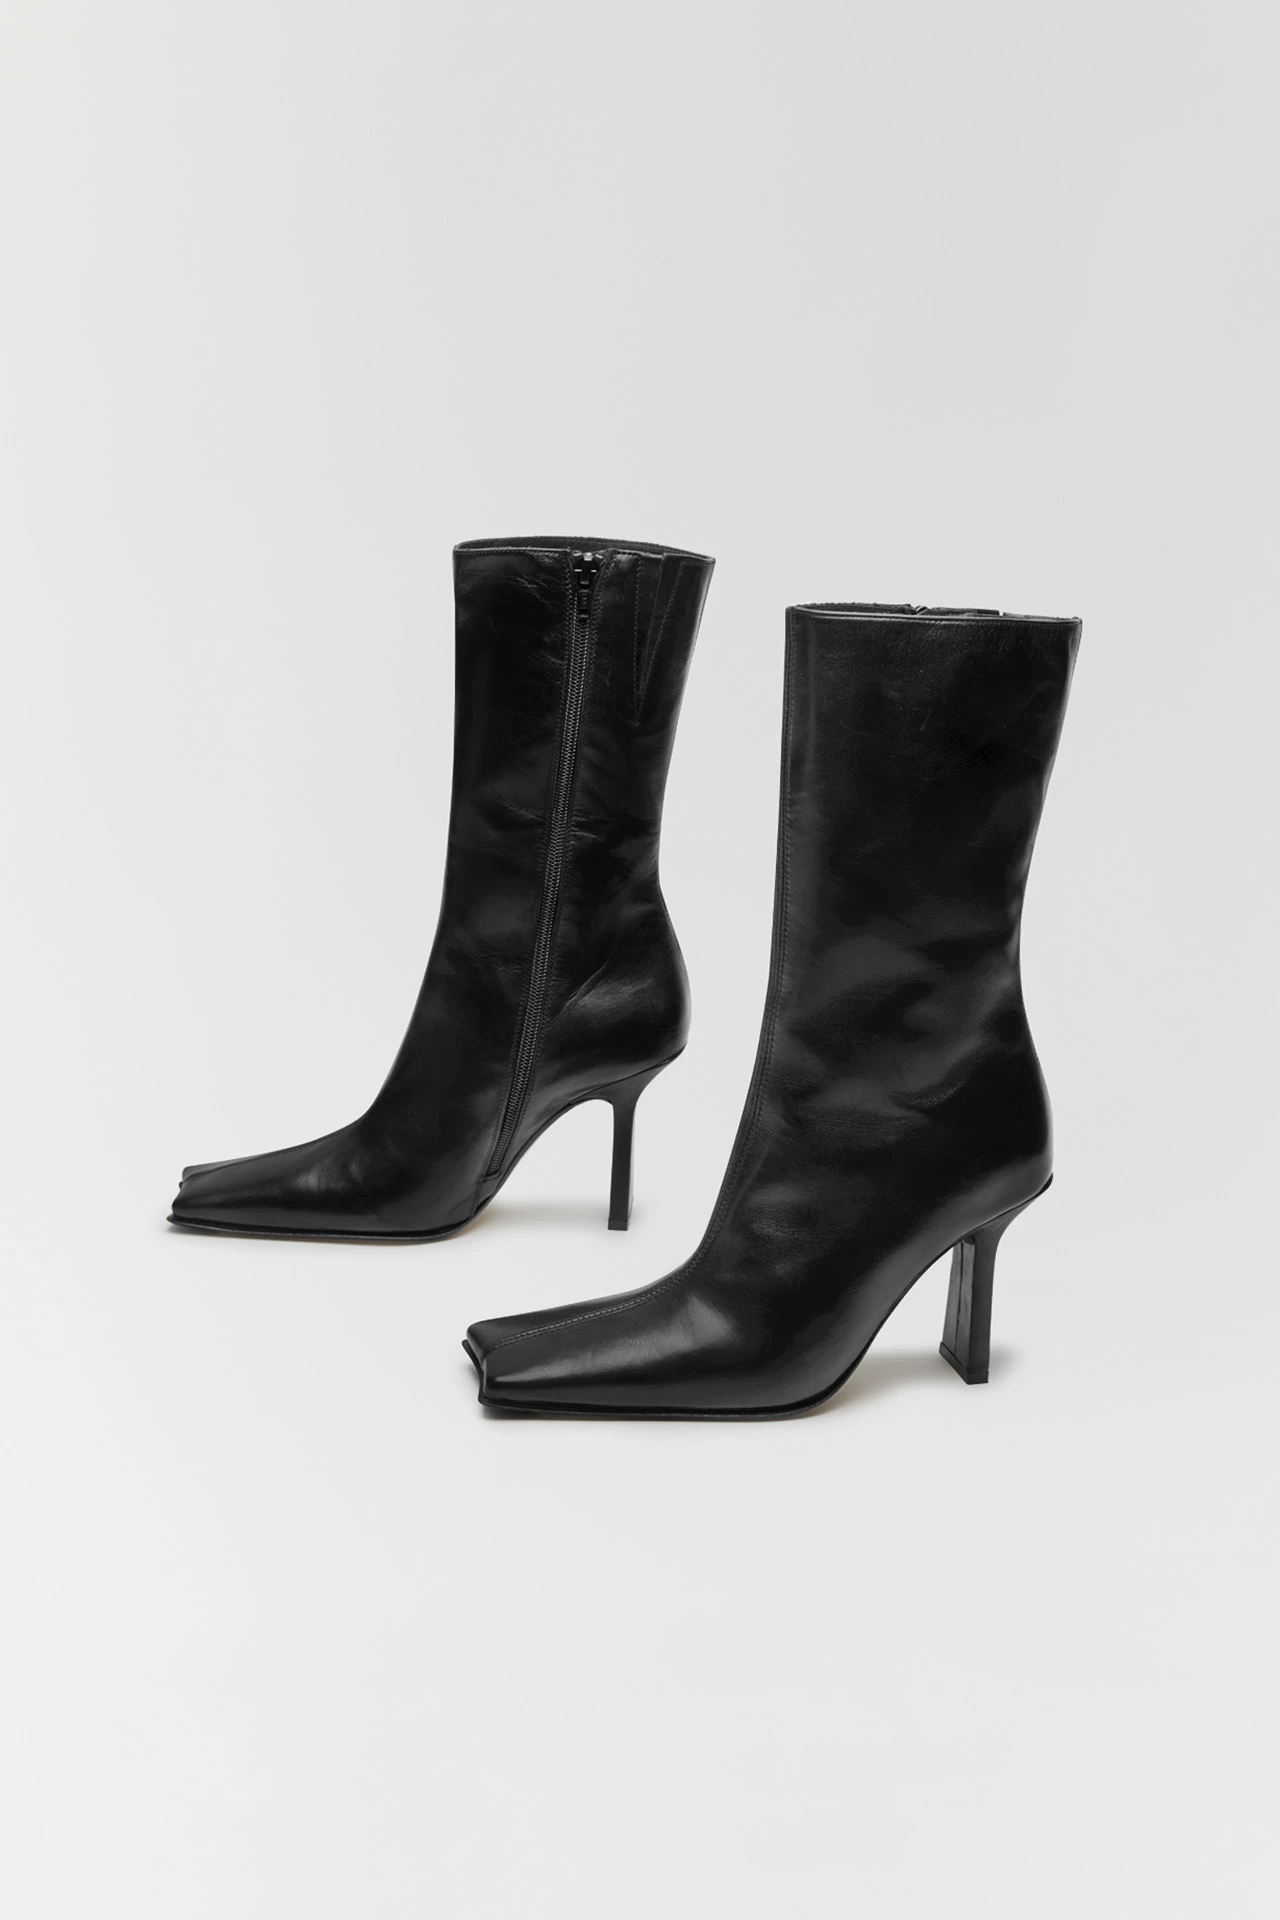 Noor Black Boots // Miista Shoes // Made in Spain